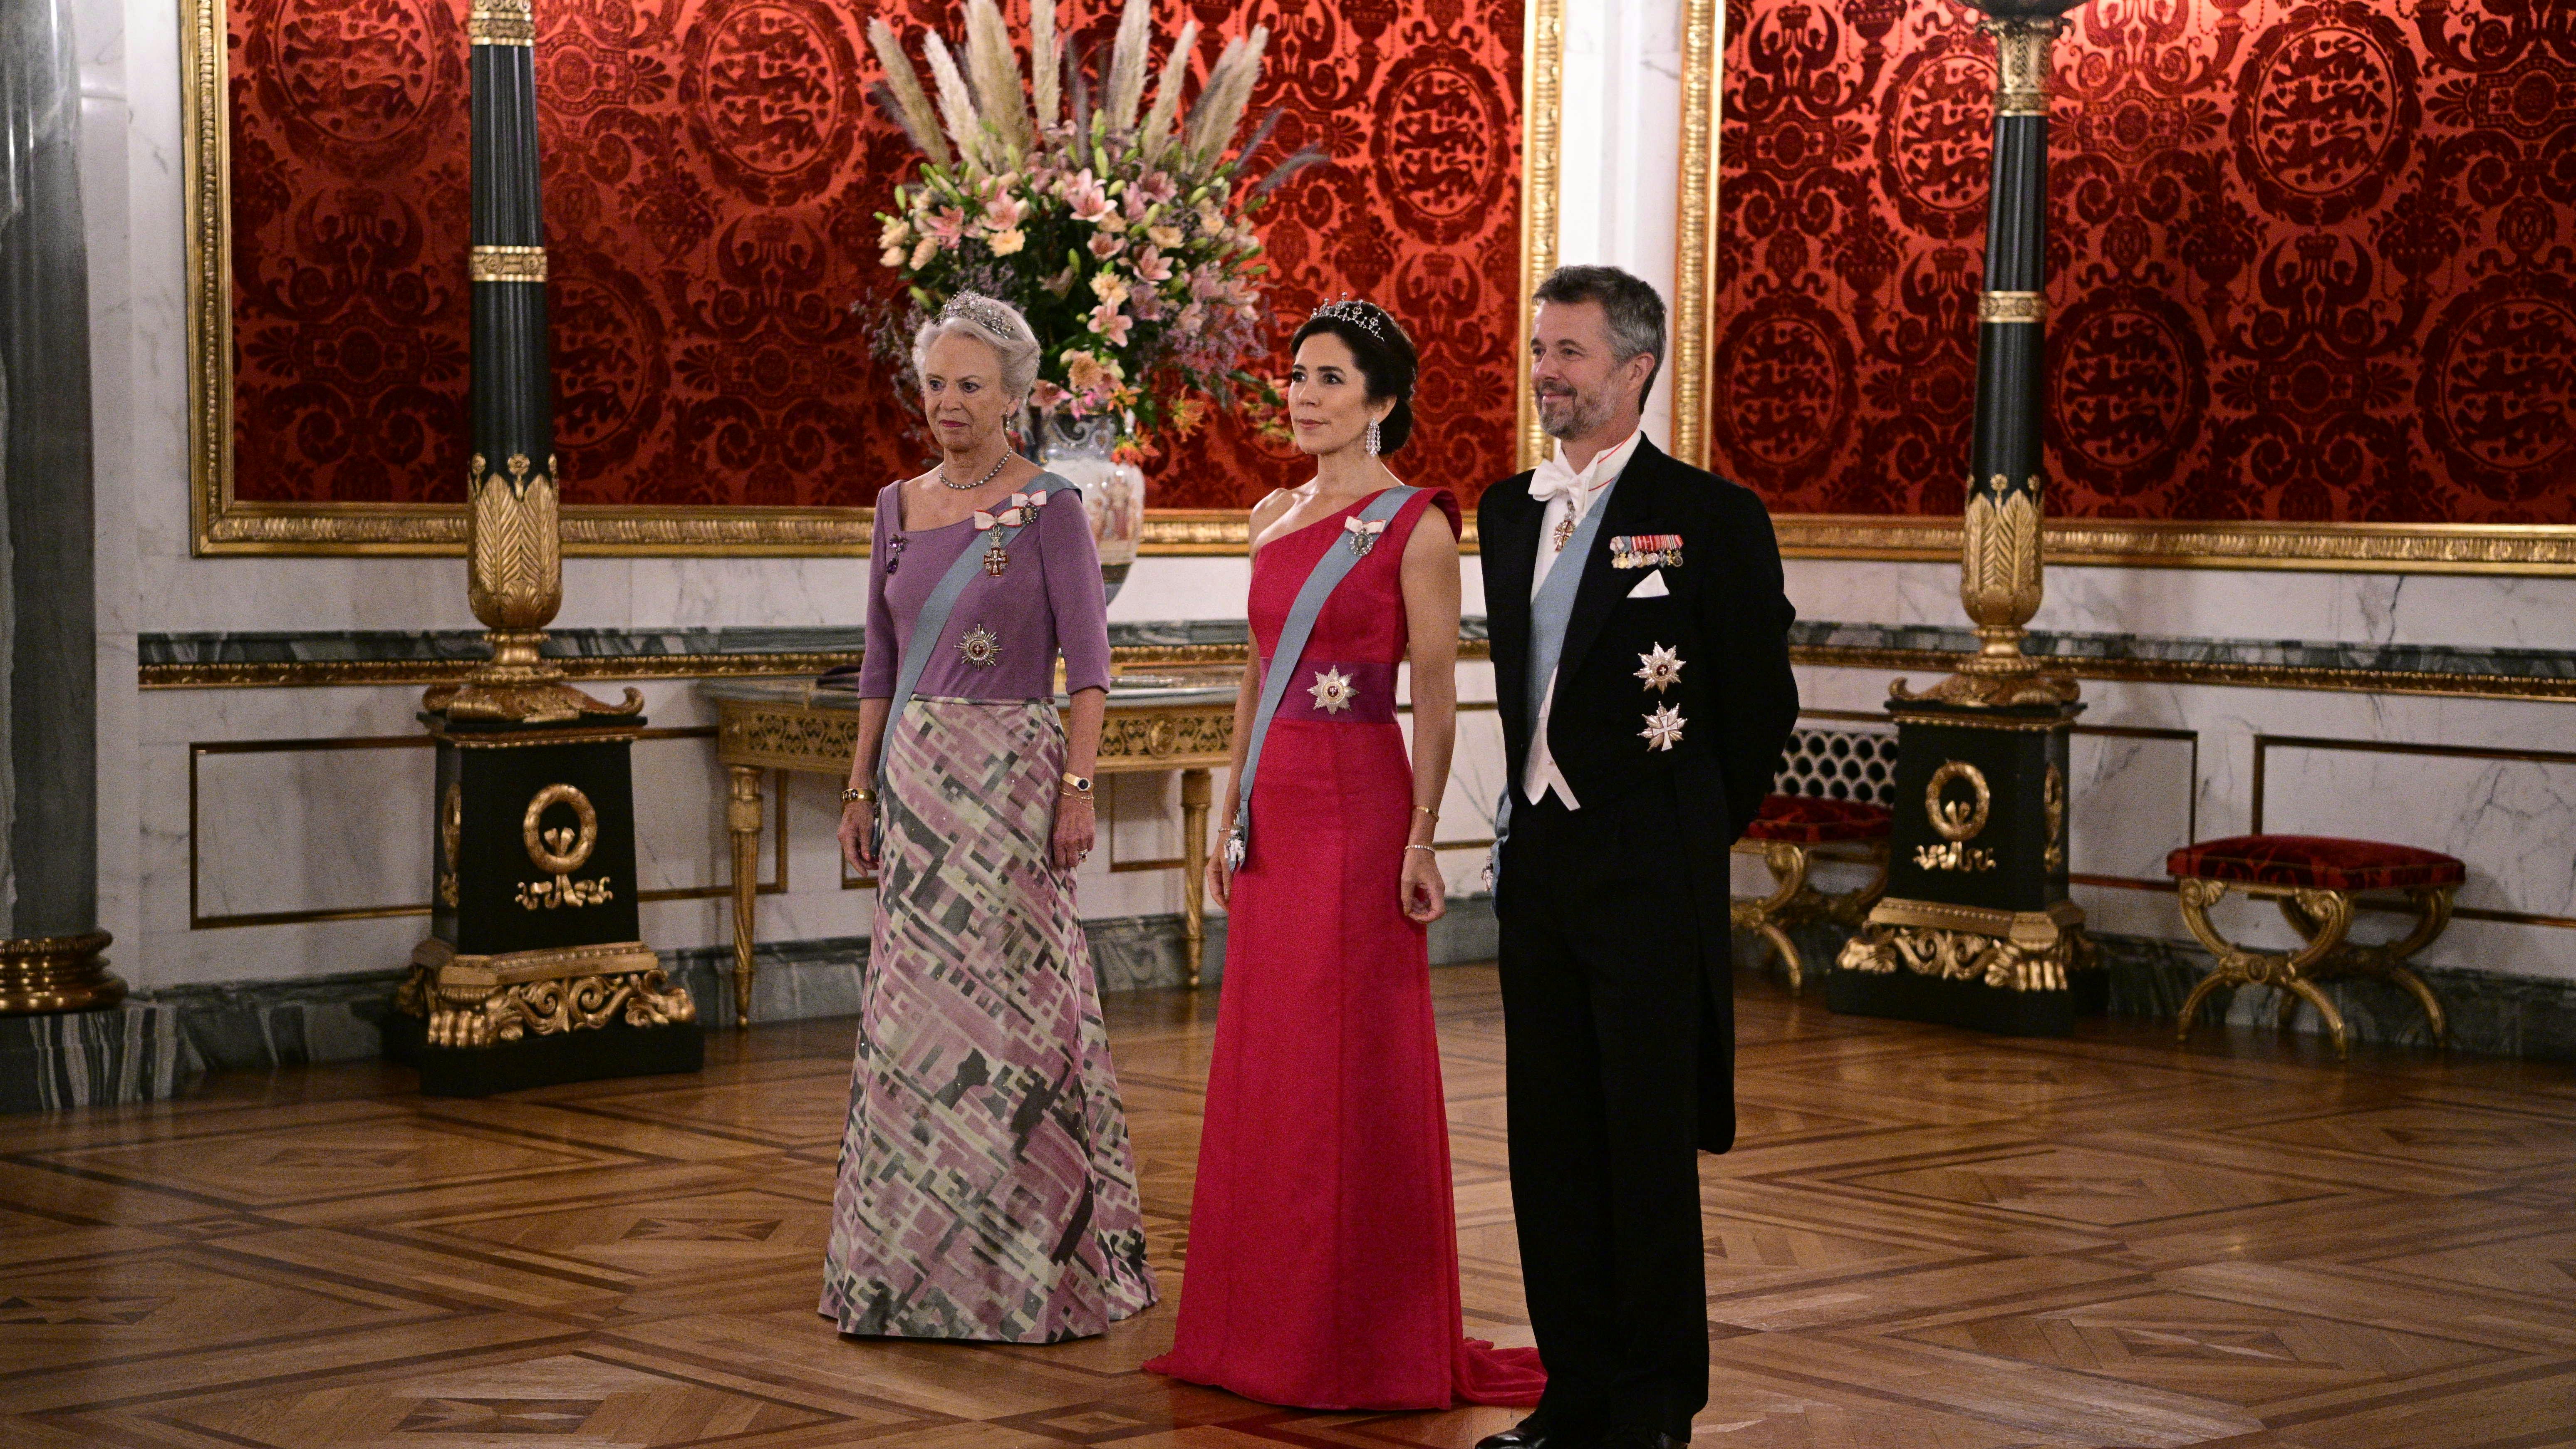 De royale er ankommet til galla Christiansborg Slot | SE og HØR